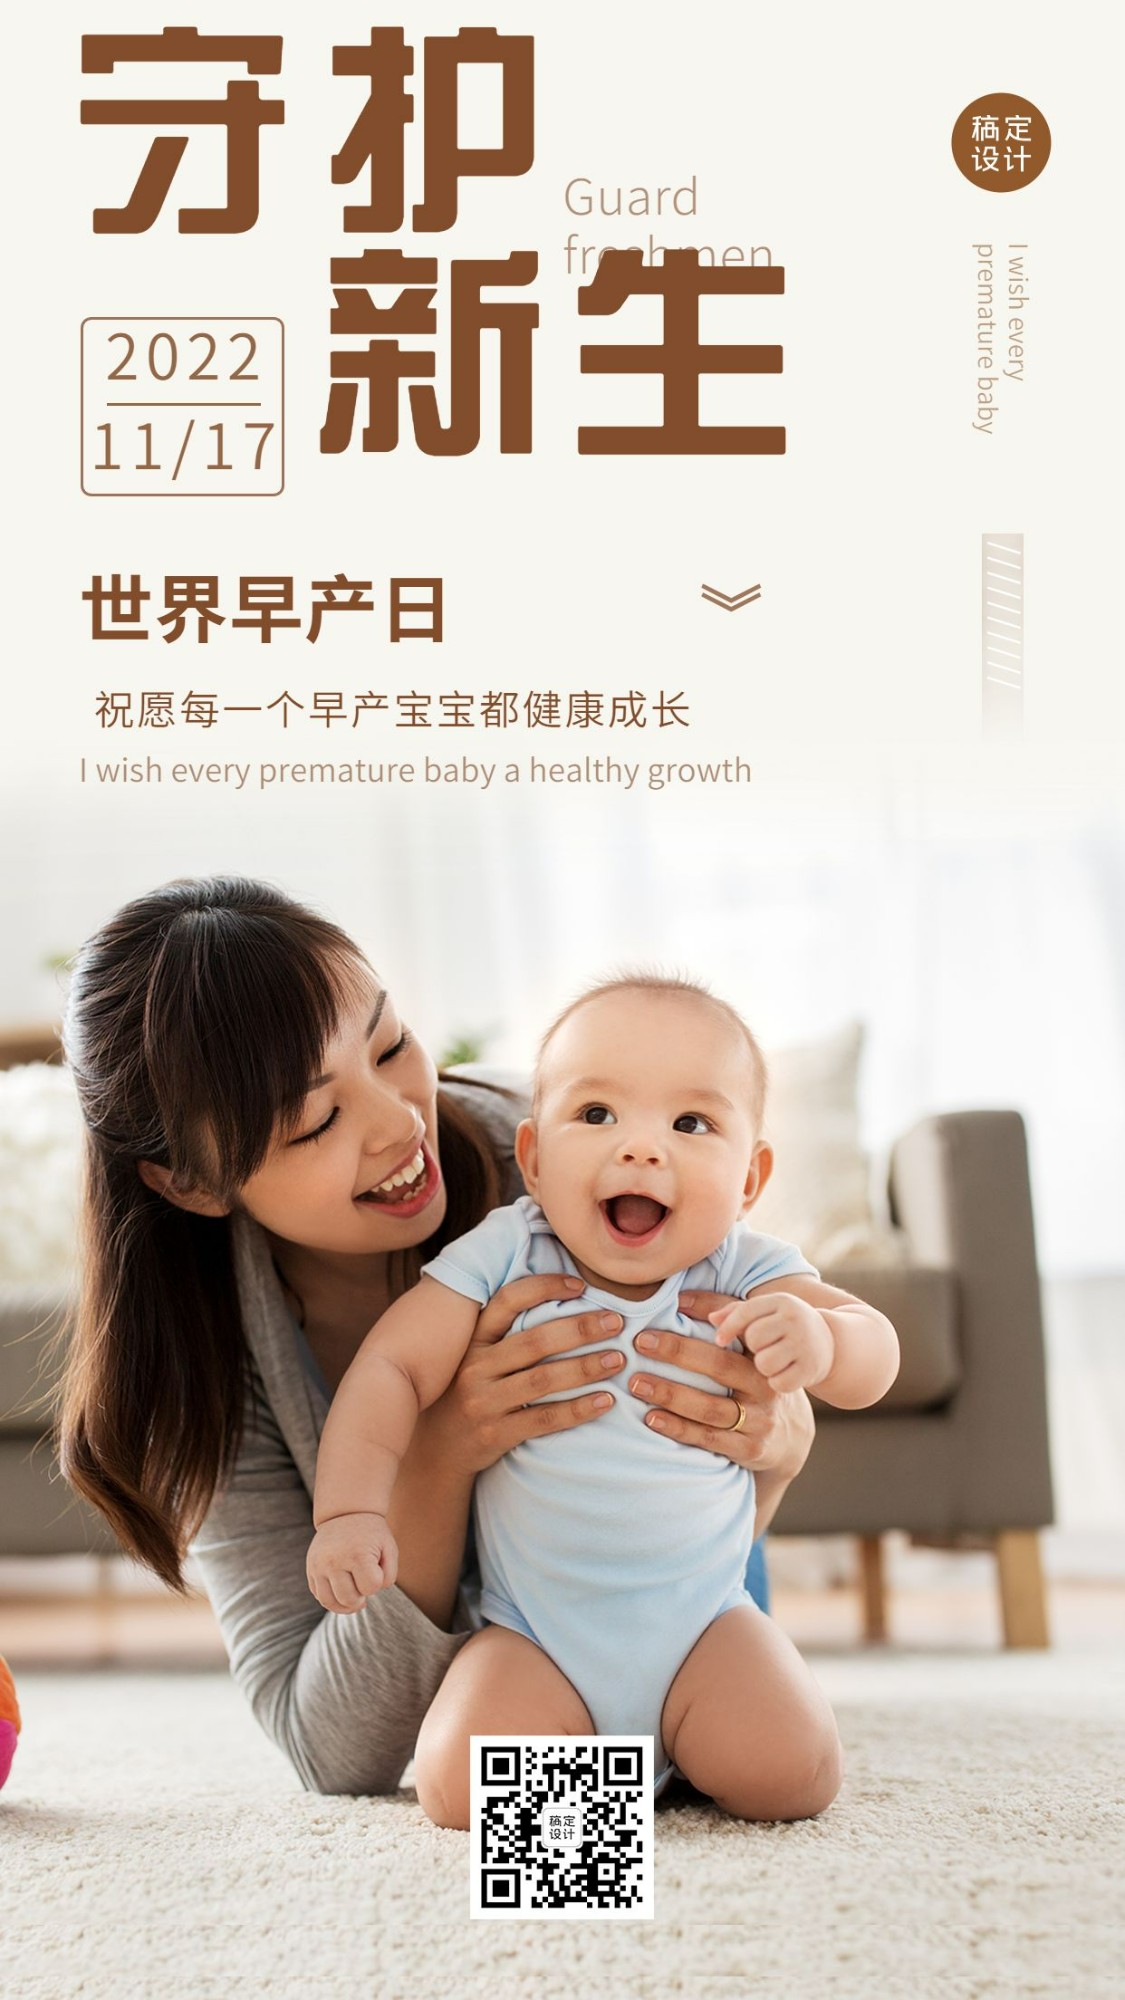 世界早产日关注早产儿健康宣传实景手机海报预览效果